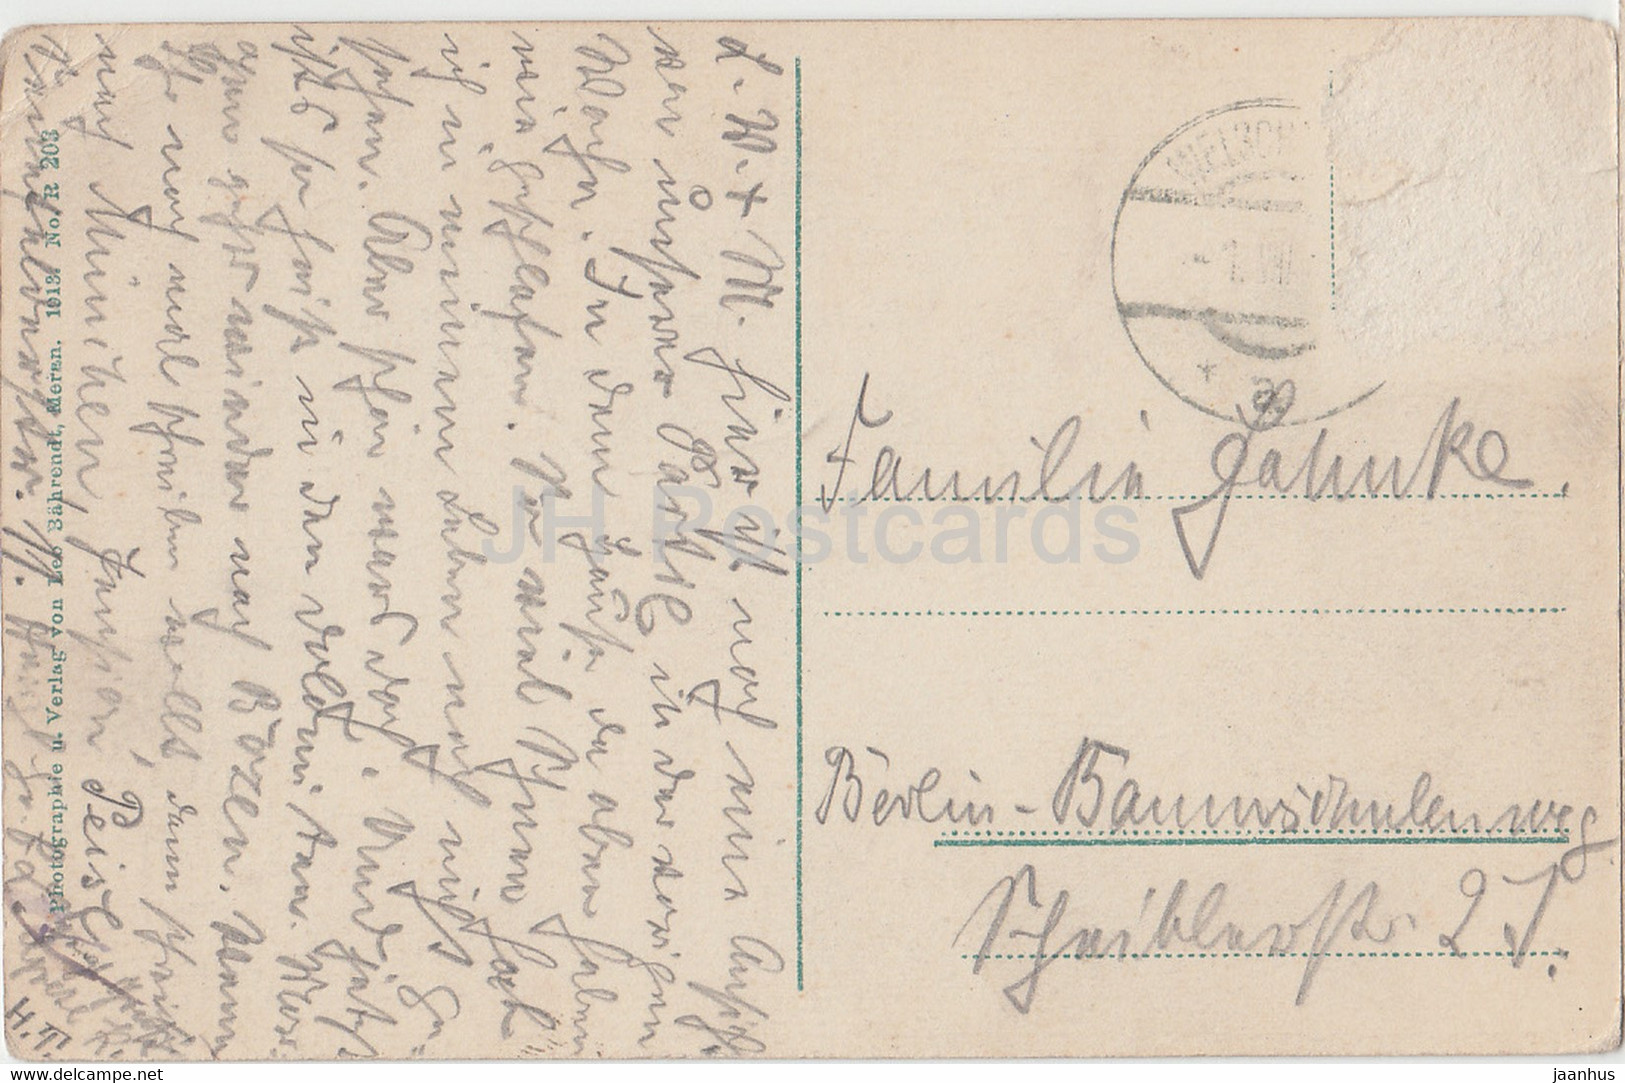 Kaiserin Elisabeth Schutzhaus Auf Dem Becher - Old Postcard - Austria - Used - Neustift Im Stubaital